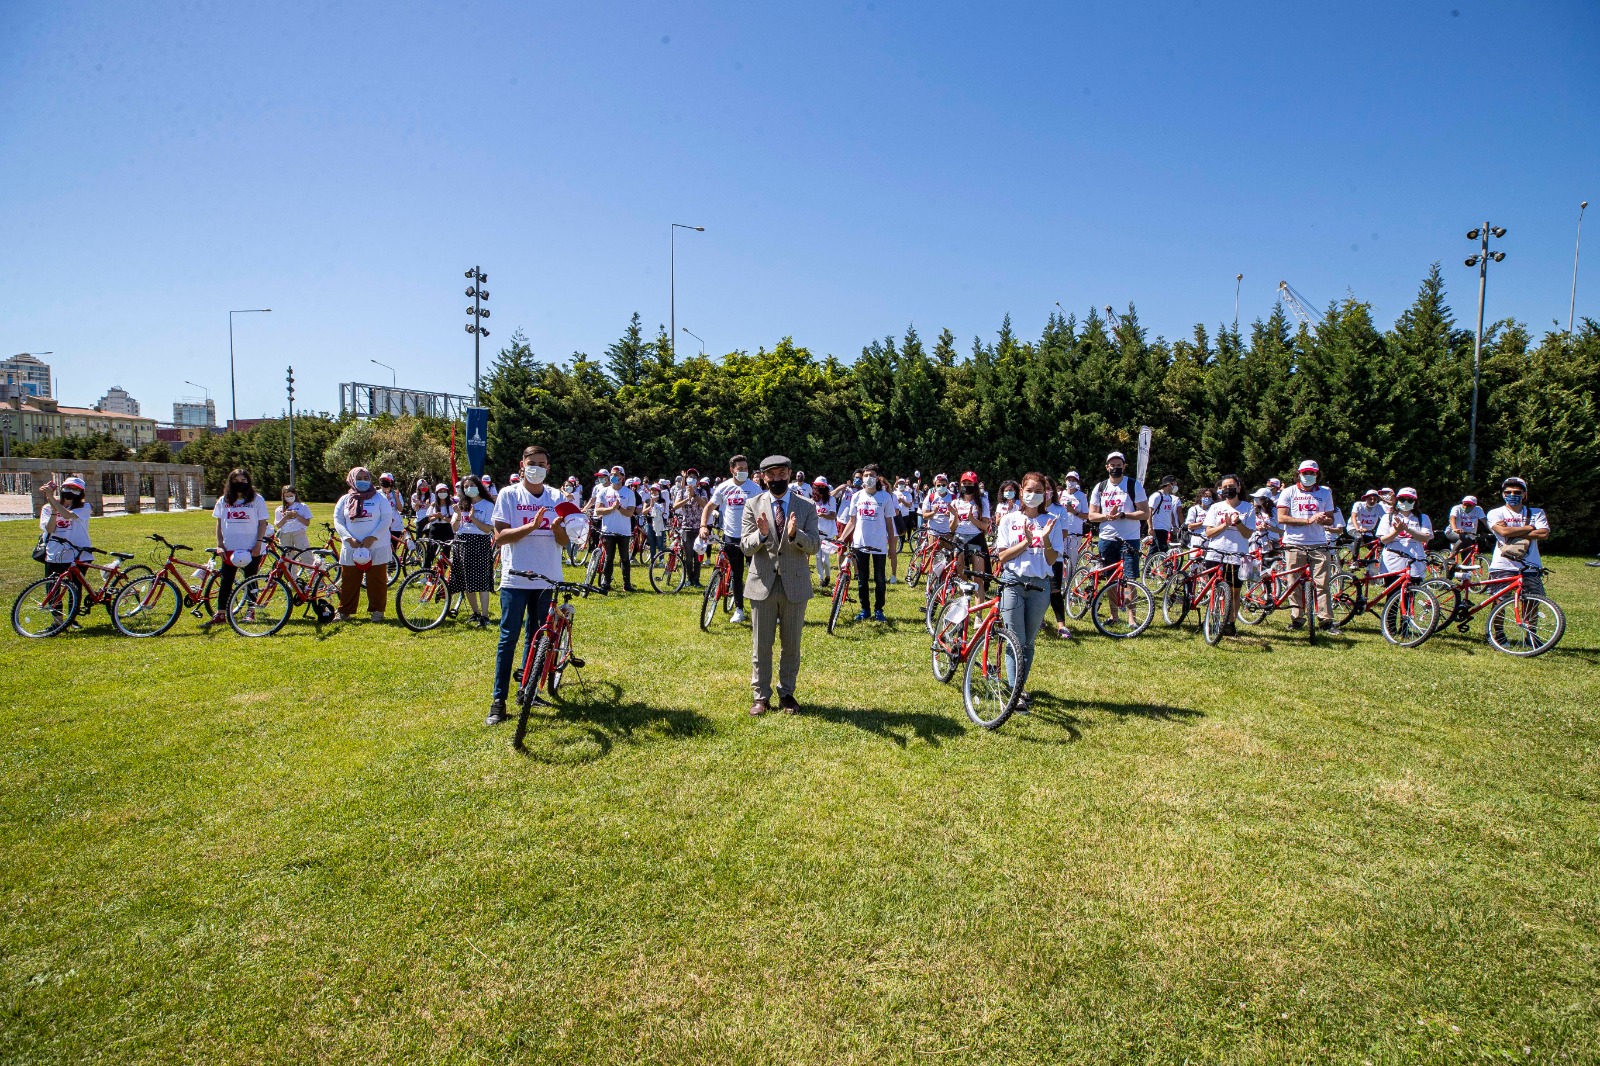  İzmir’de 19 Mayıs’ın 102. Yıl Dönümünde Gönüllü Gençlere 102 Bisiklet Hediye Edildi